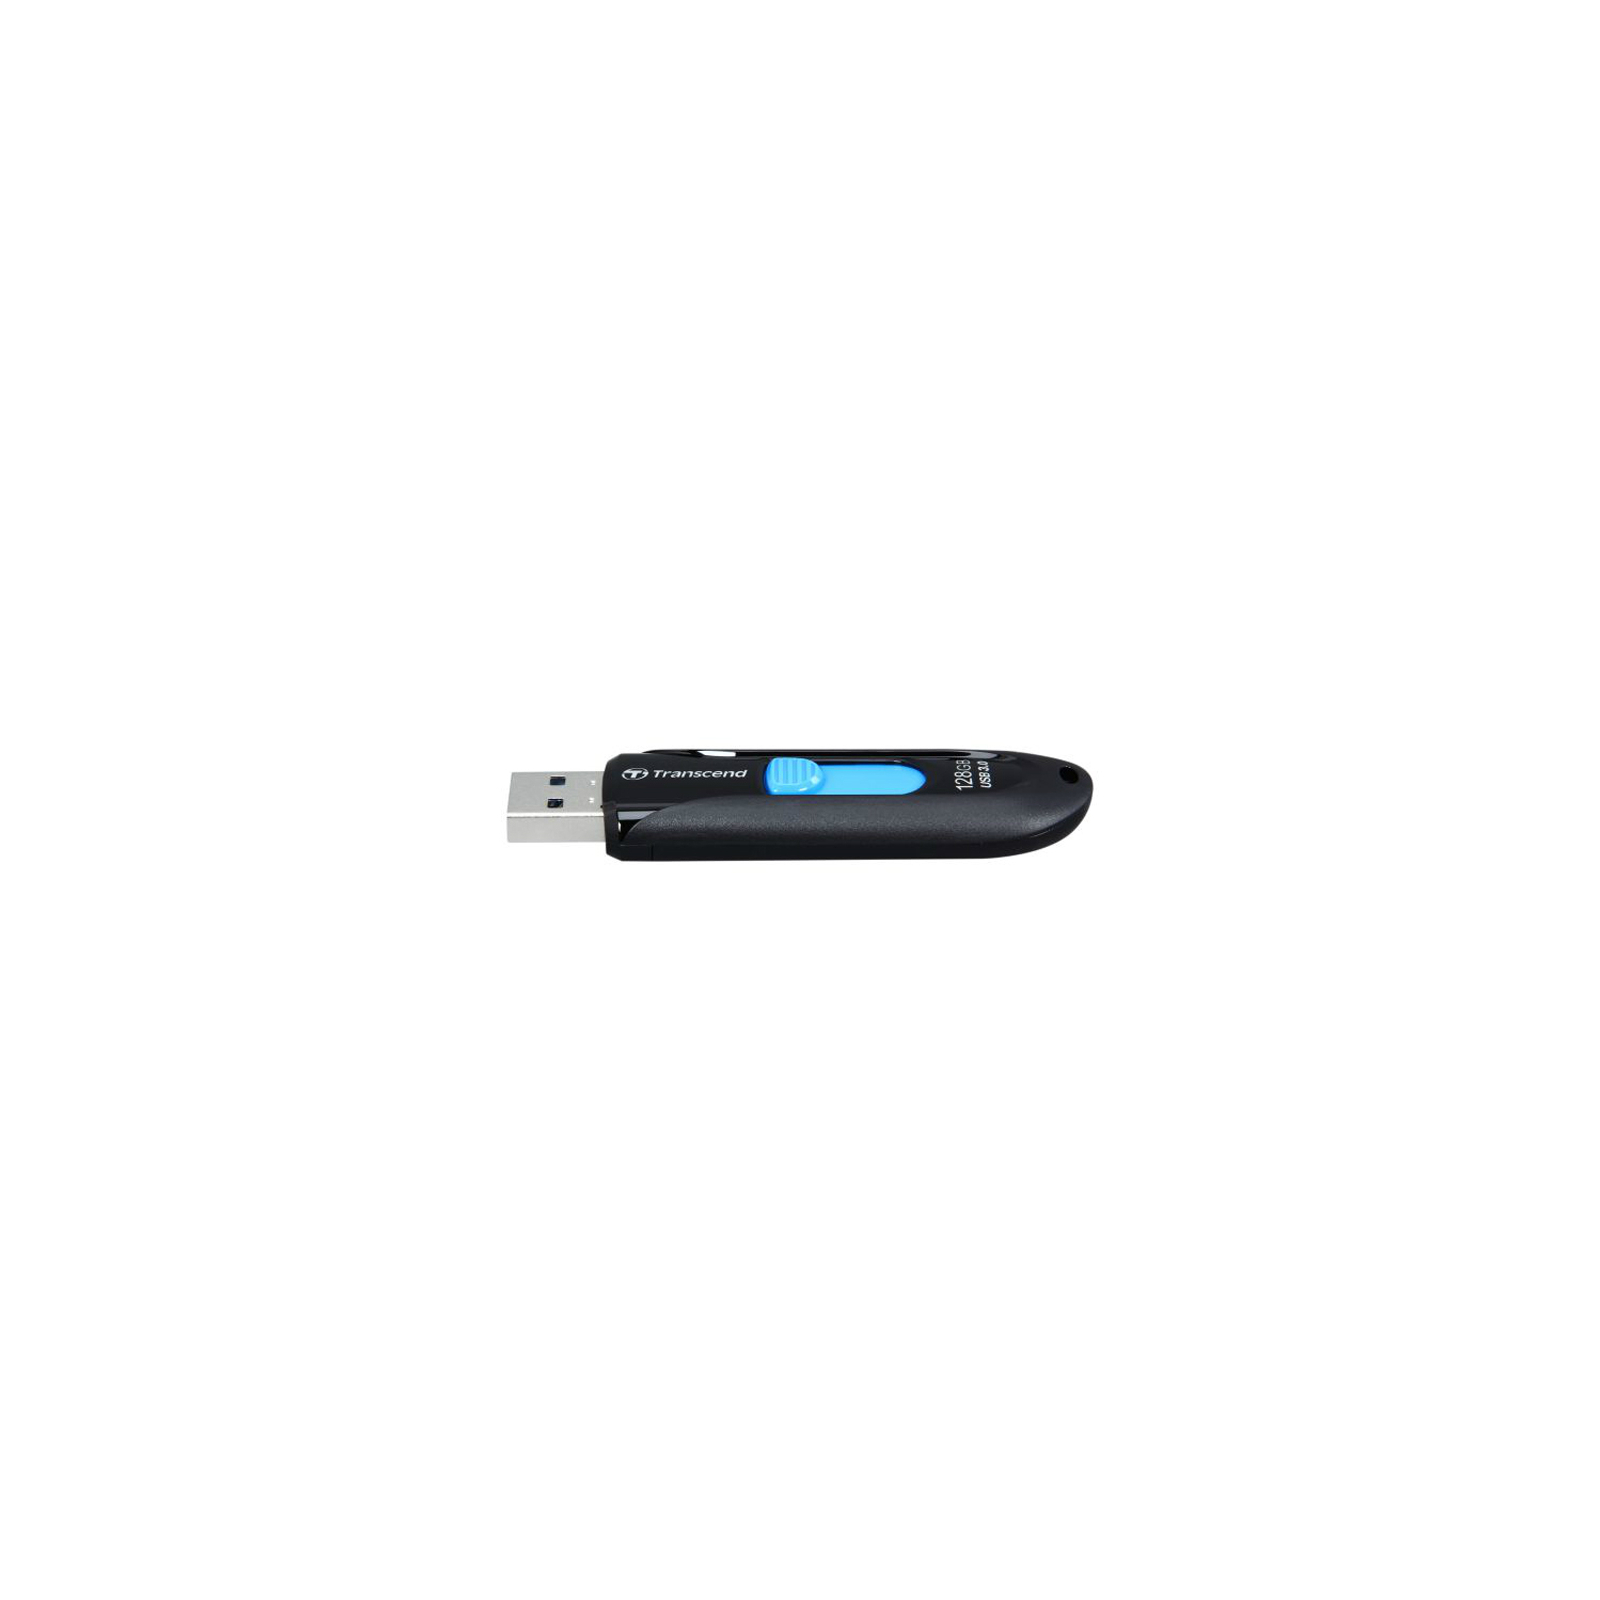 USB флеш накопичувач Transcend 128GB JetFlash 790 White USB 3.0 (TS128GJF790W) зображення 3